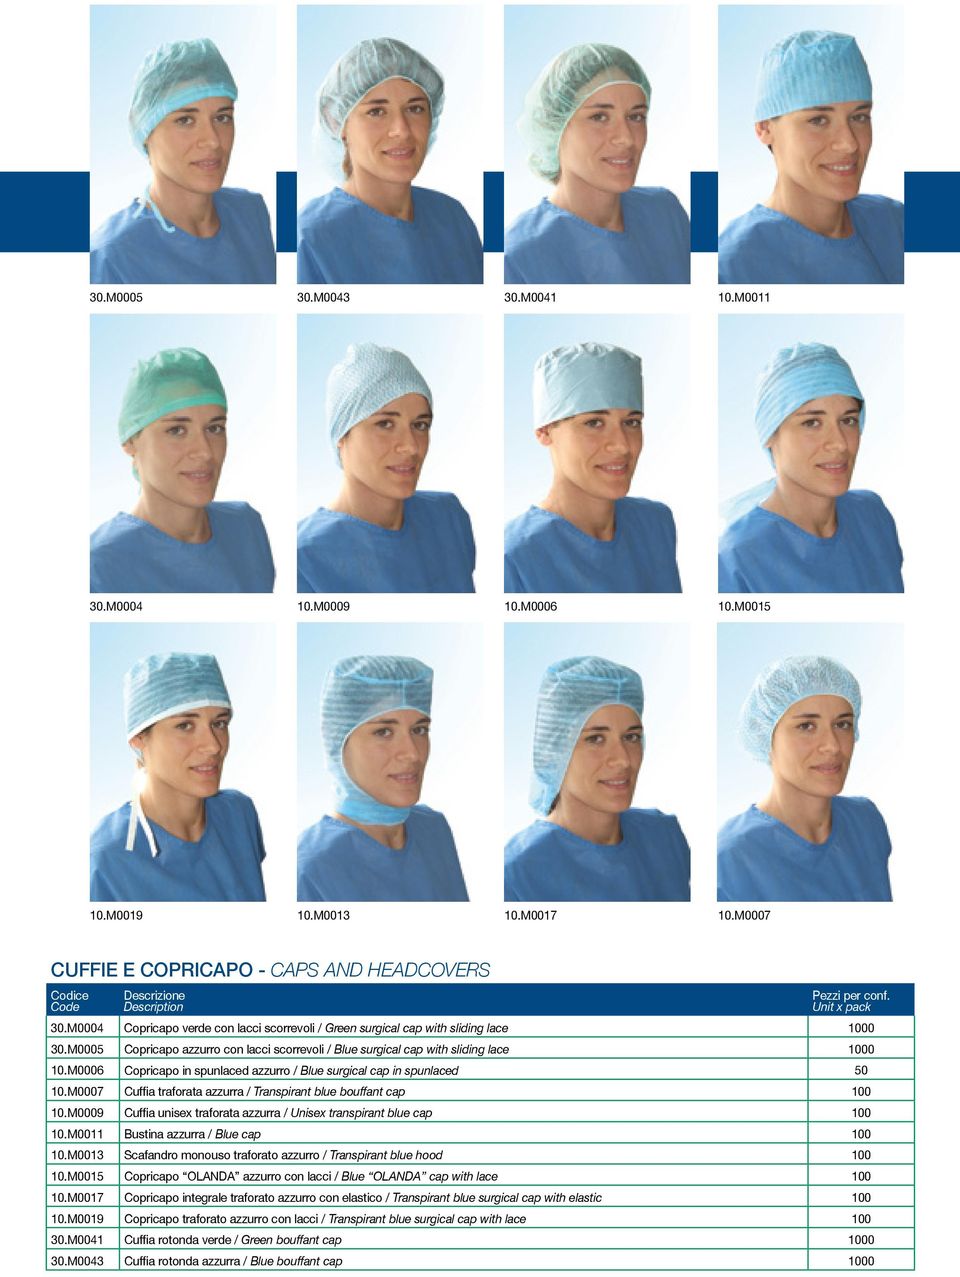 M0006 Copricapo in spunlaced azzurro / Blue surgical cap in spunlaced 50 10.M0007 Cuffia traforata azzurra / Transpirant blue bouffant cap 100 10.